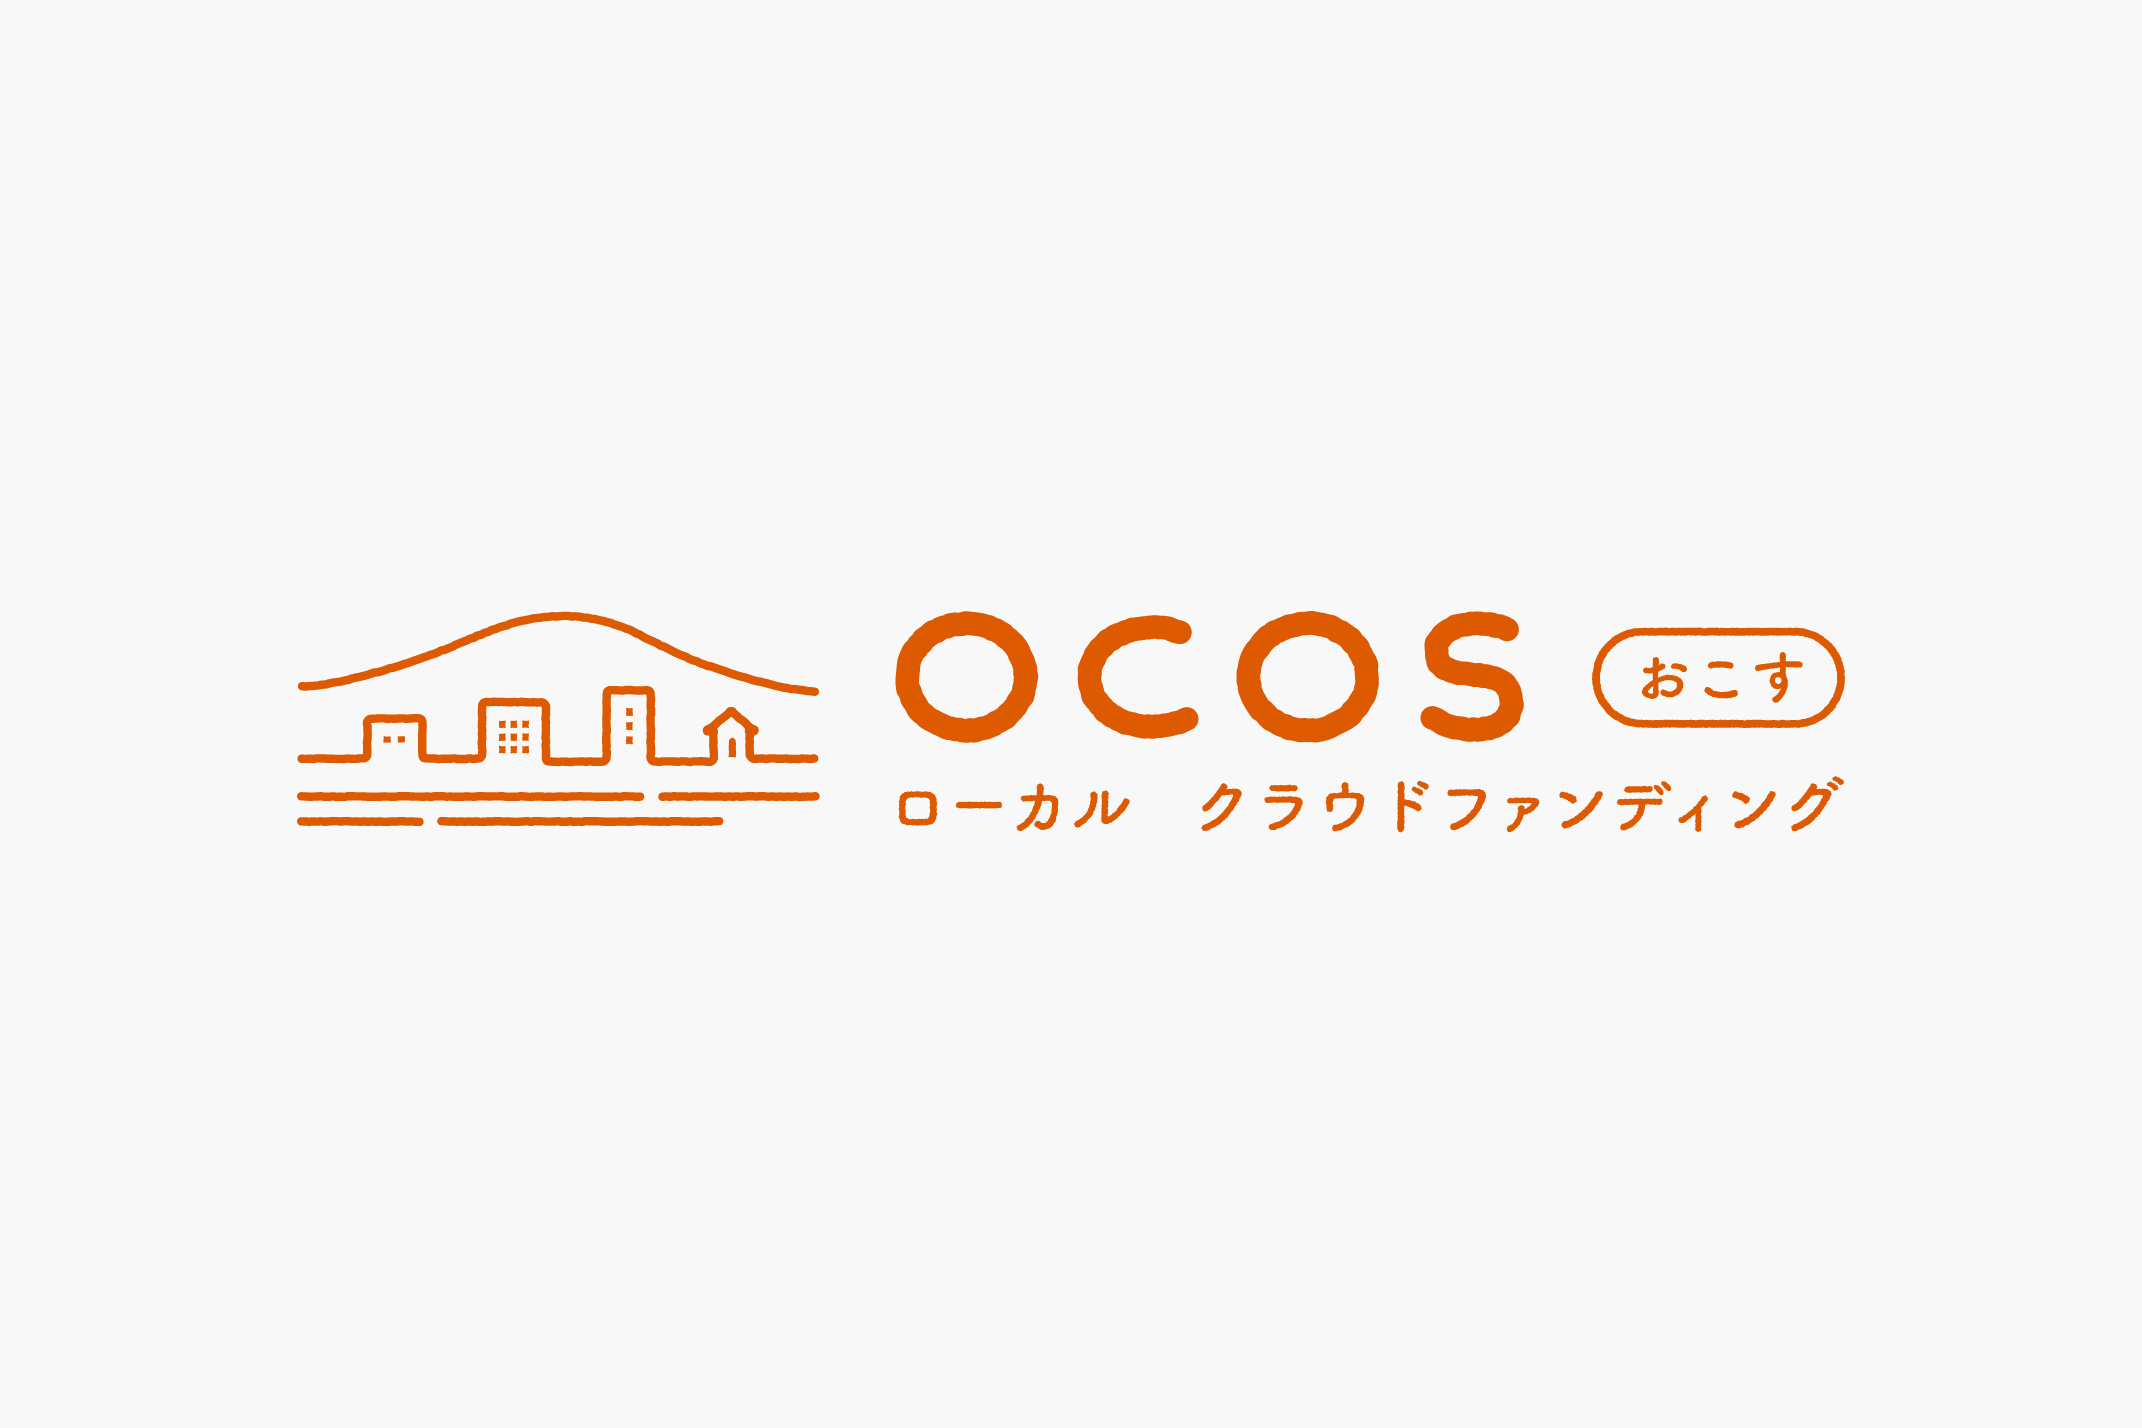 OCOS / ロゴ・リーフレット・チラシの写真です